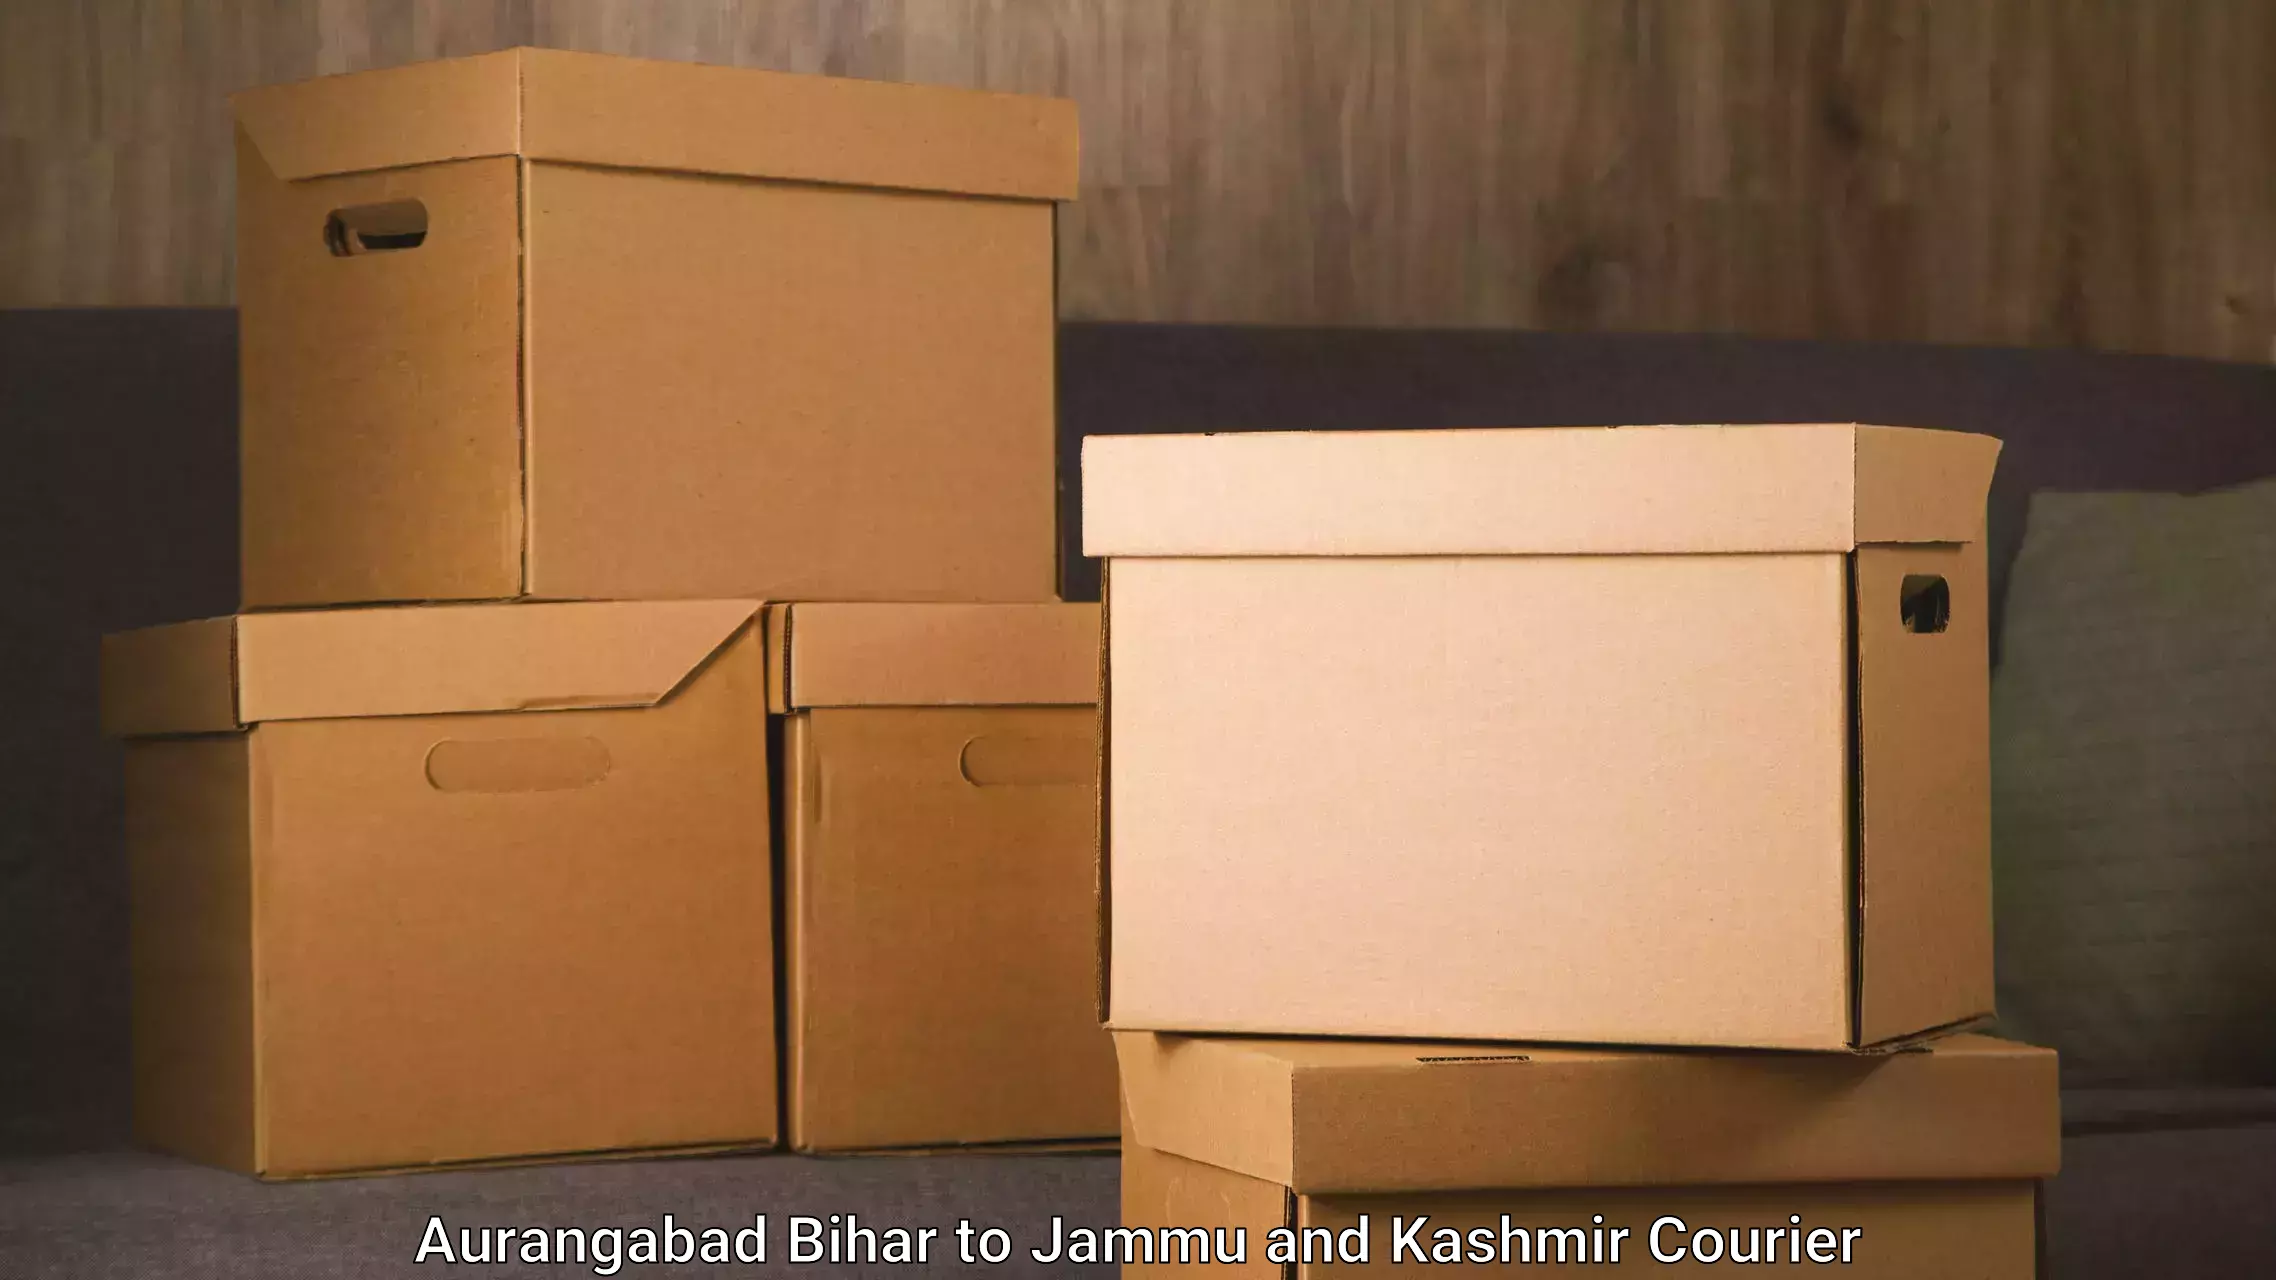 Furniture transport experts Aurangabad Bihar to Jammu and Kashmir